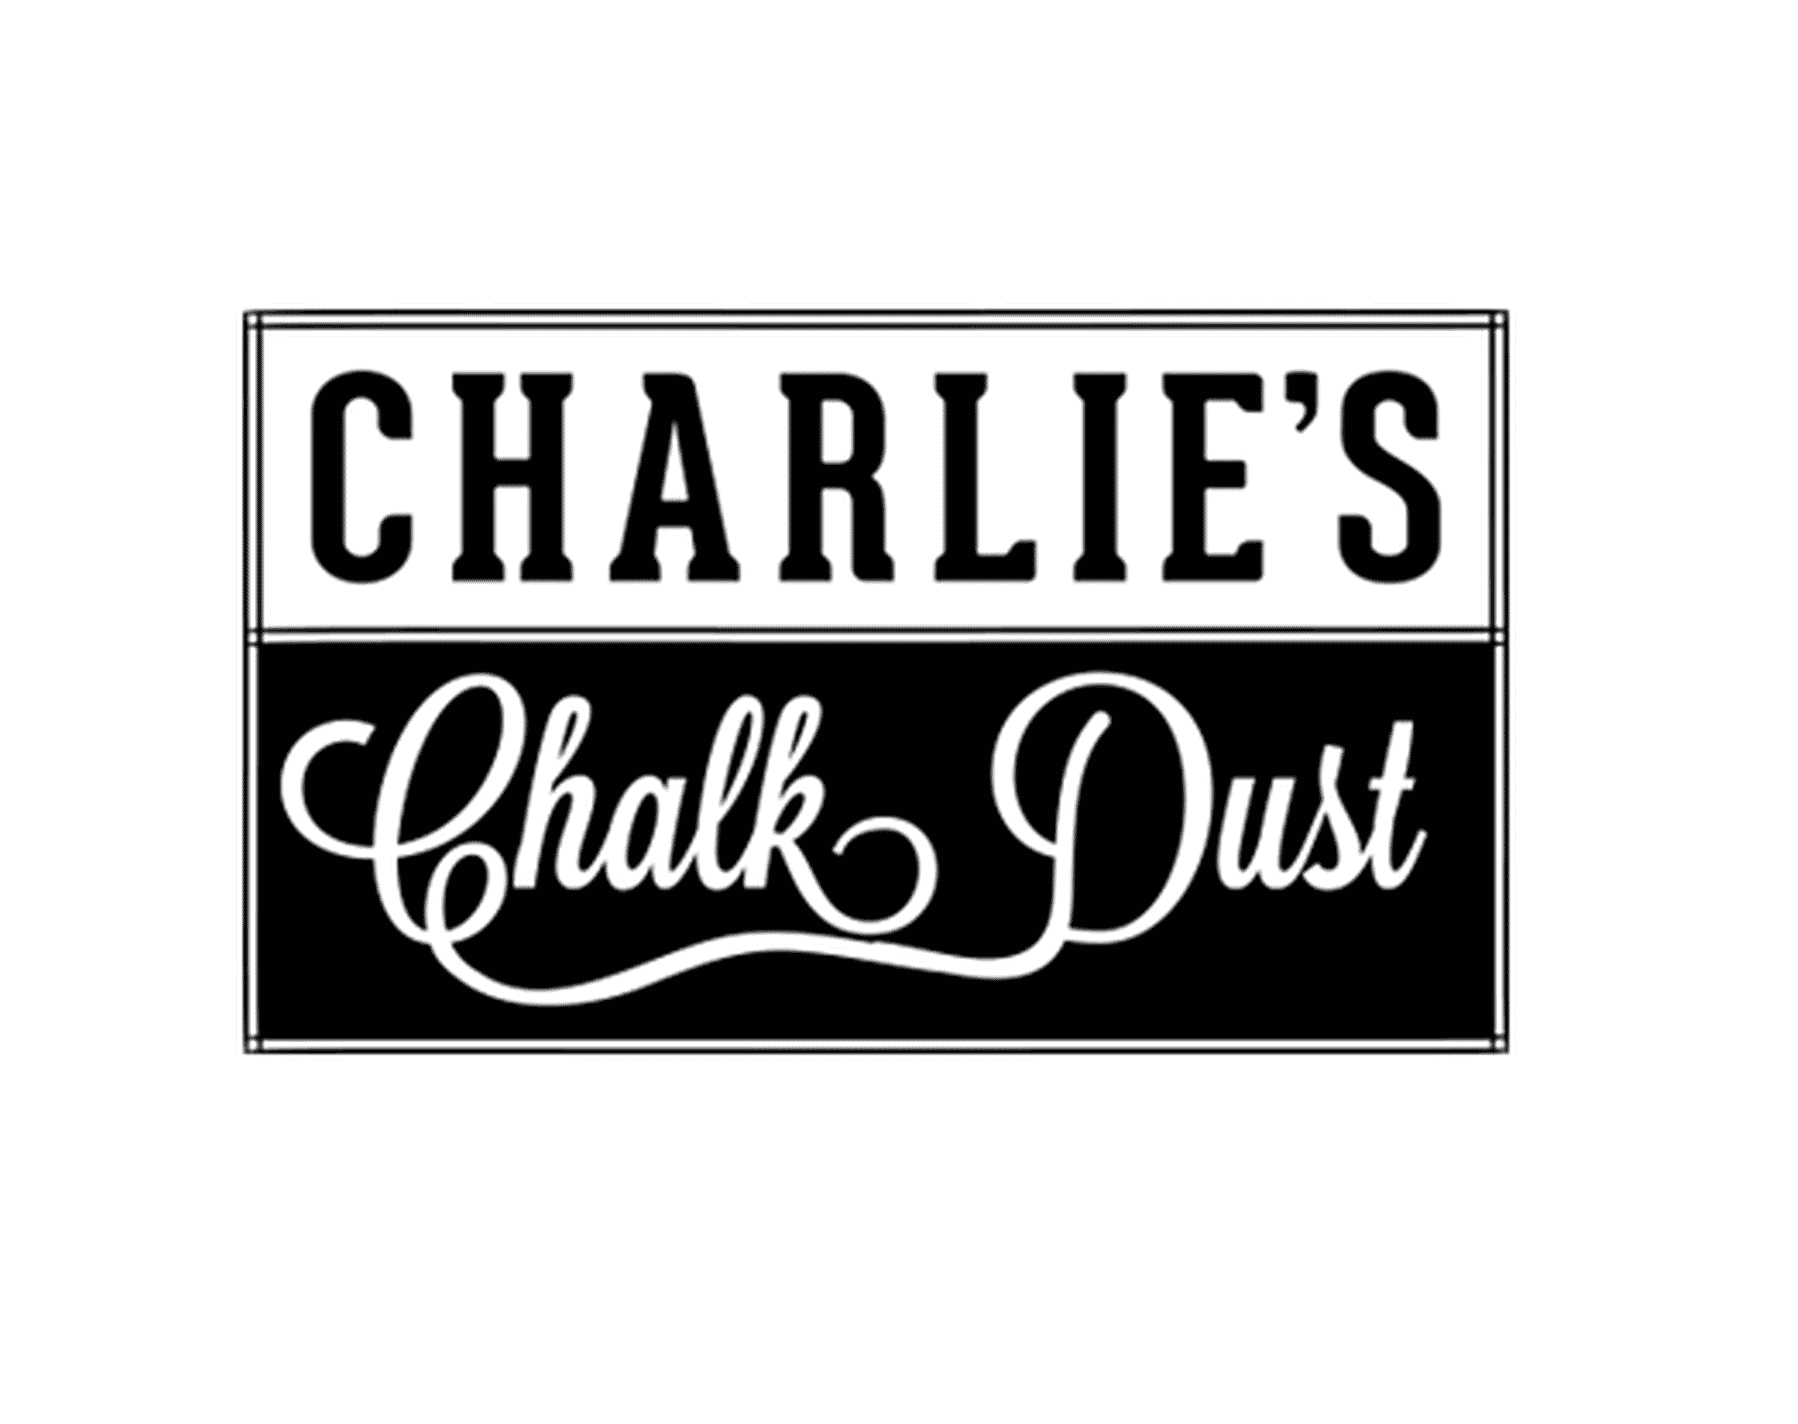 Charlie's Chalk Dust E-Liquid's